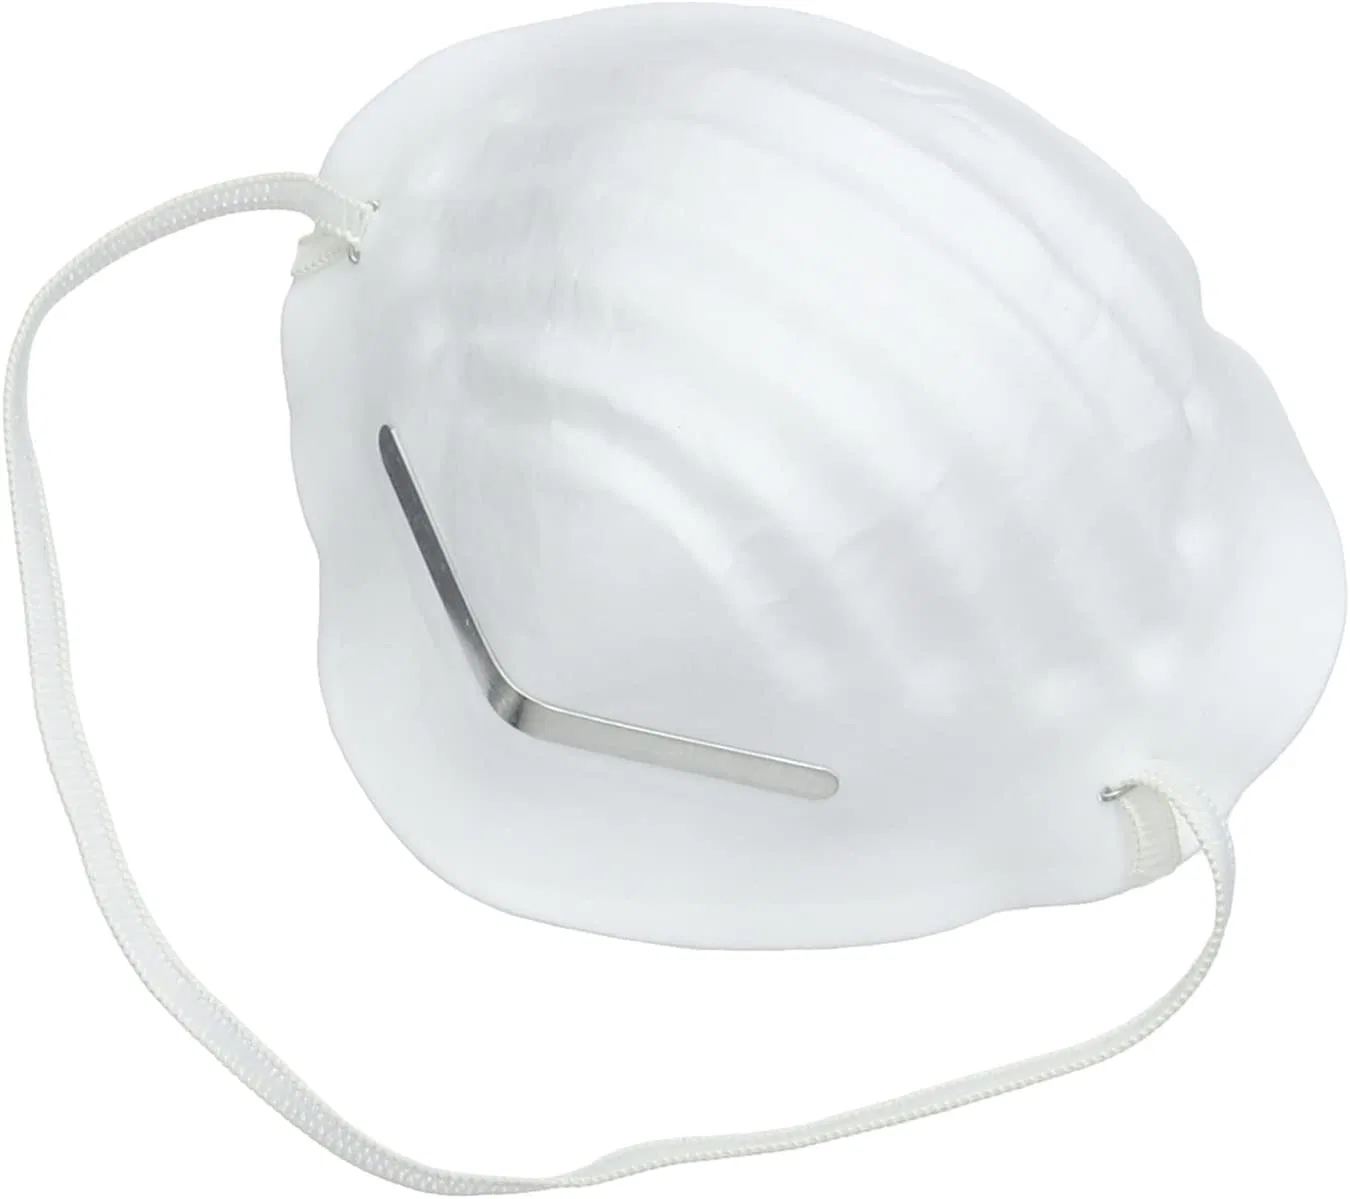 Masque jetable non tissé homologué ce, blanc, anti-poussière, industriel Masque facial de protection de la sécurité du travail